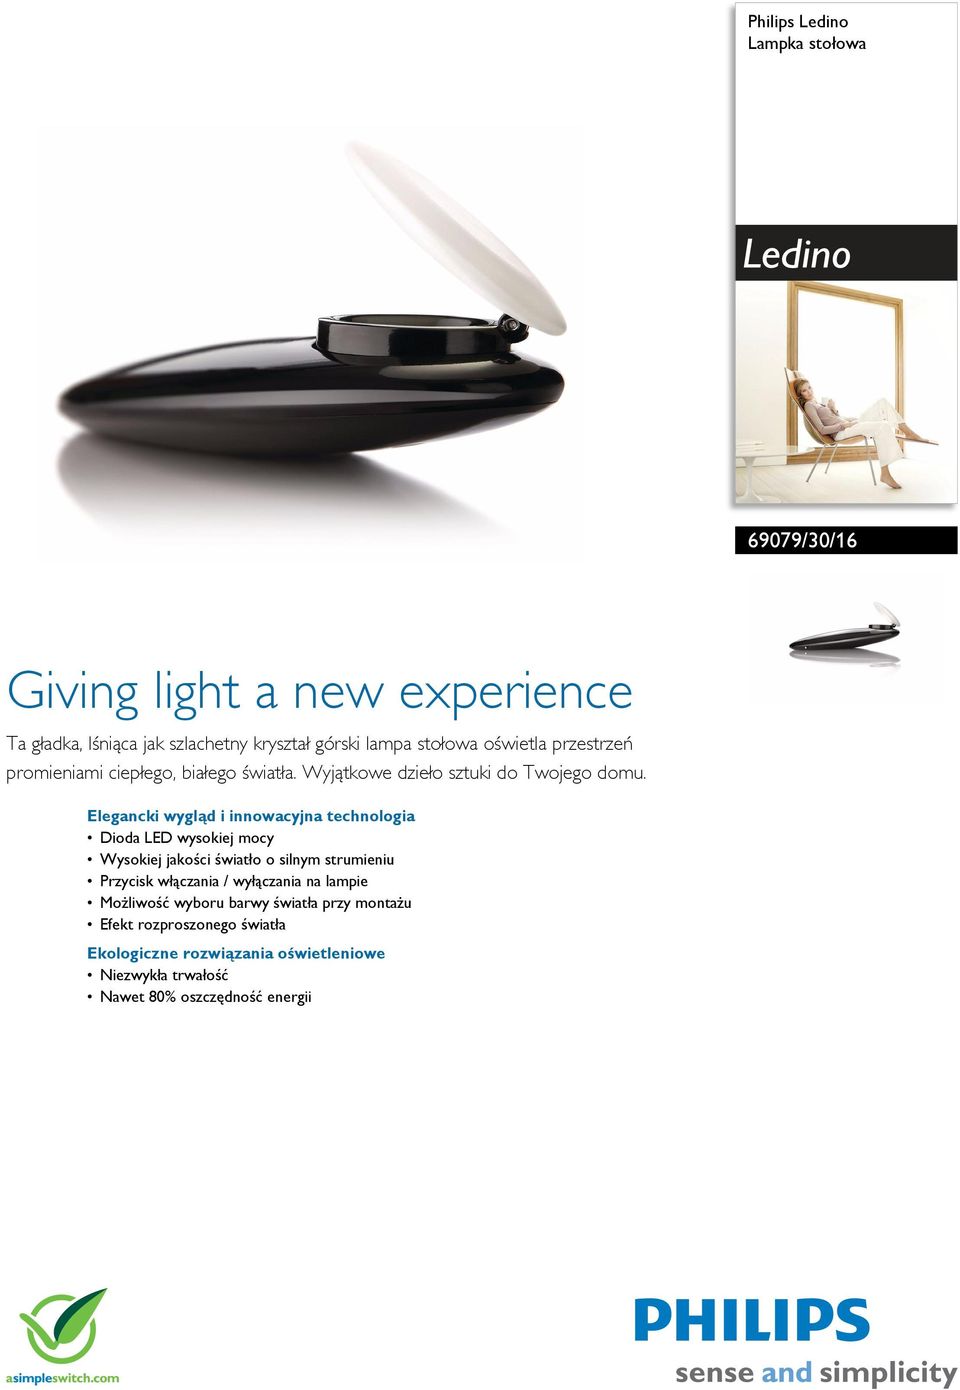 Elegancki wygl d i innowacyjna technologia Dioda LED wysokiej mocy Wysokiej jako ci wiat o o silnym strumieniu Przycisk w czania / wy